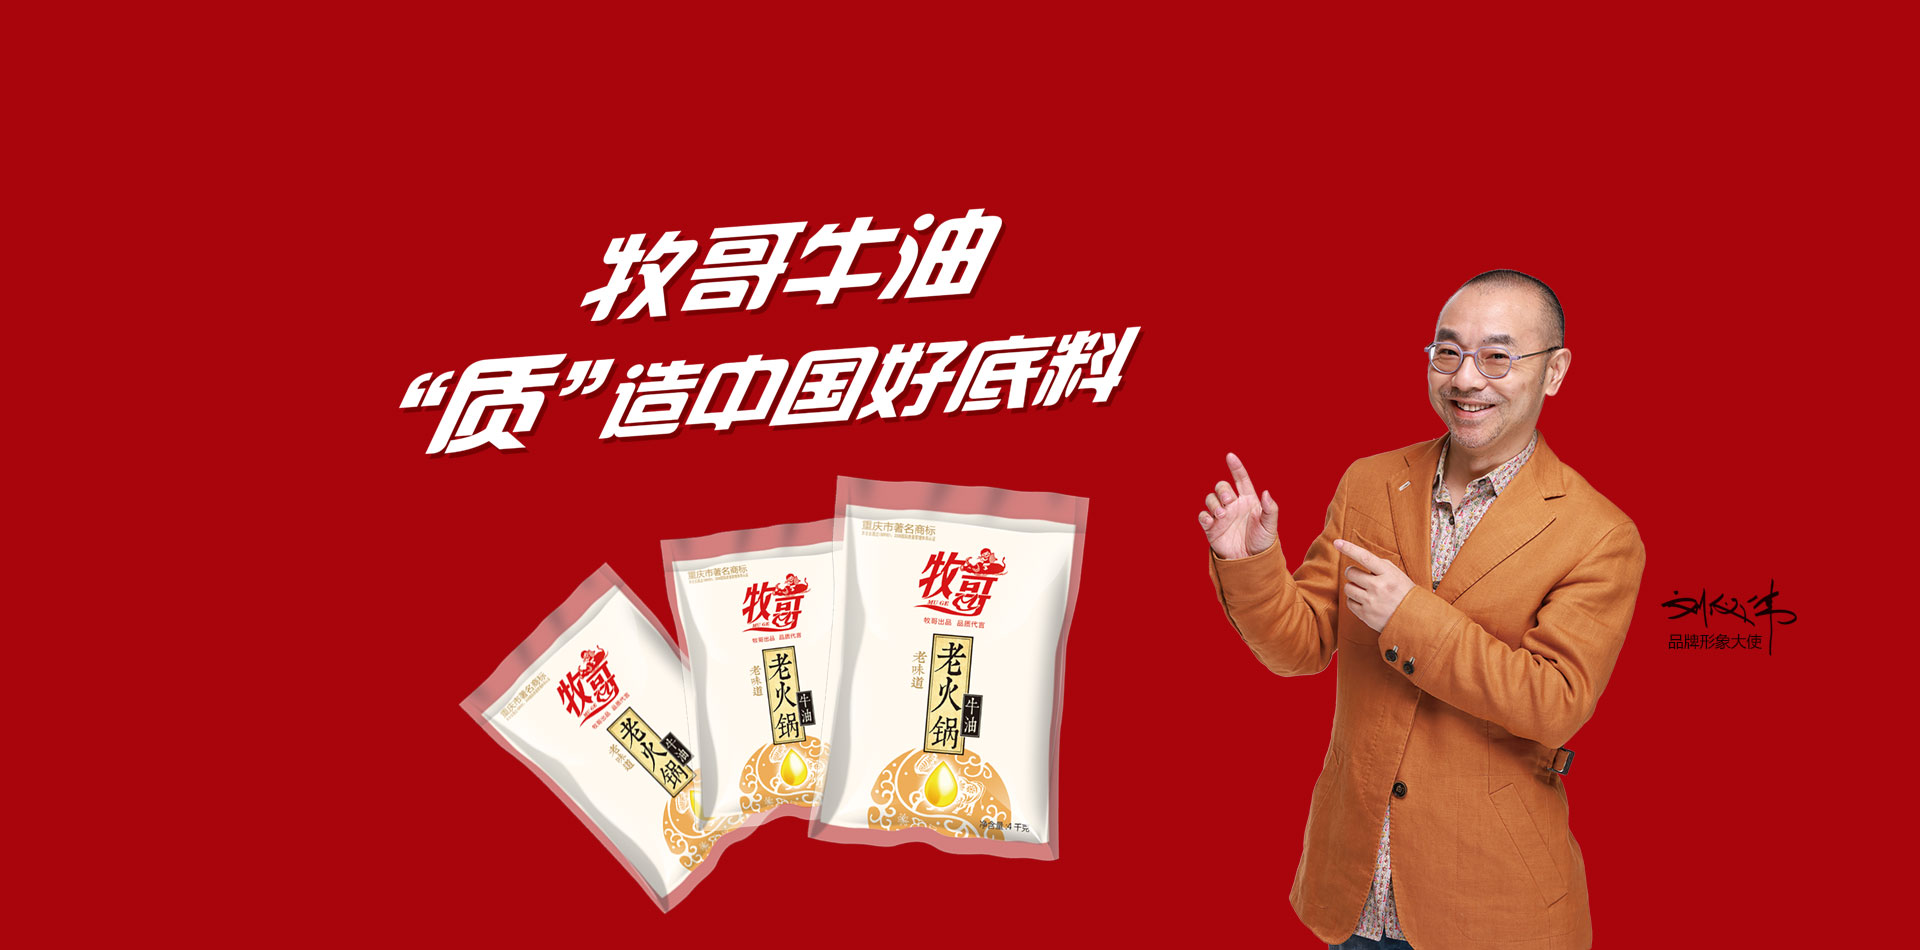 关于当前产品bng电子竞技·(中国)官方网站的成功案例等相关图片